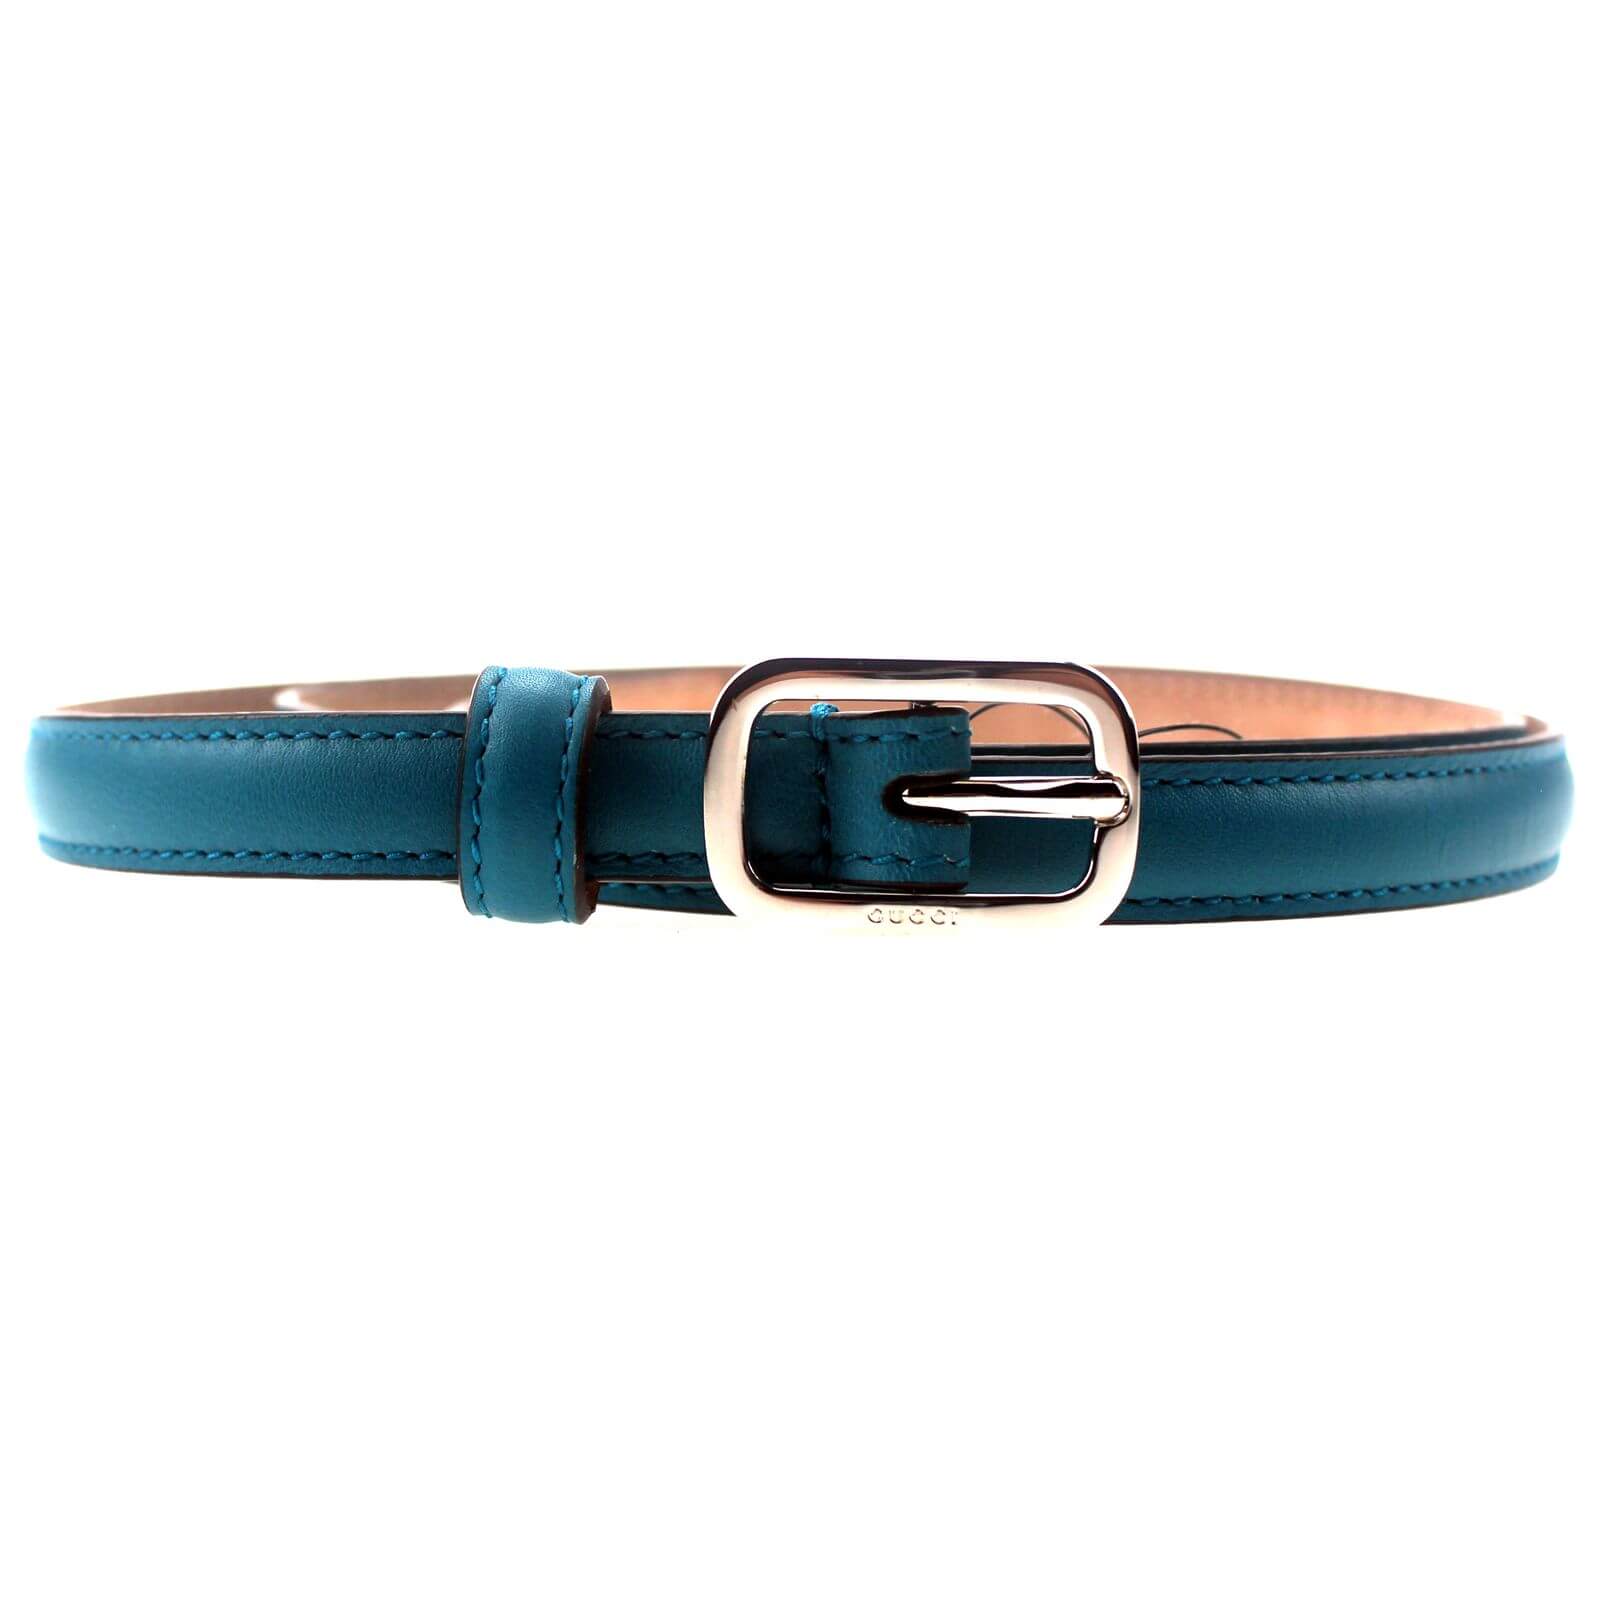 Leather Belt Women Belts for Women Skinny Belt Blue Leather 